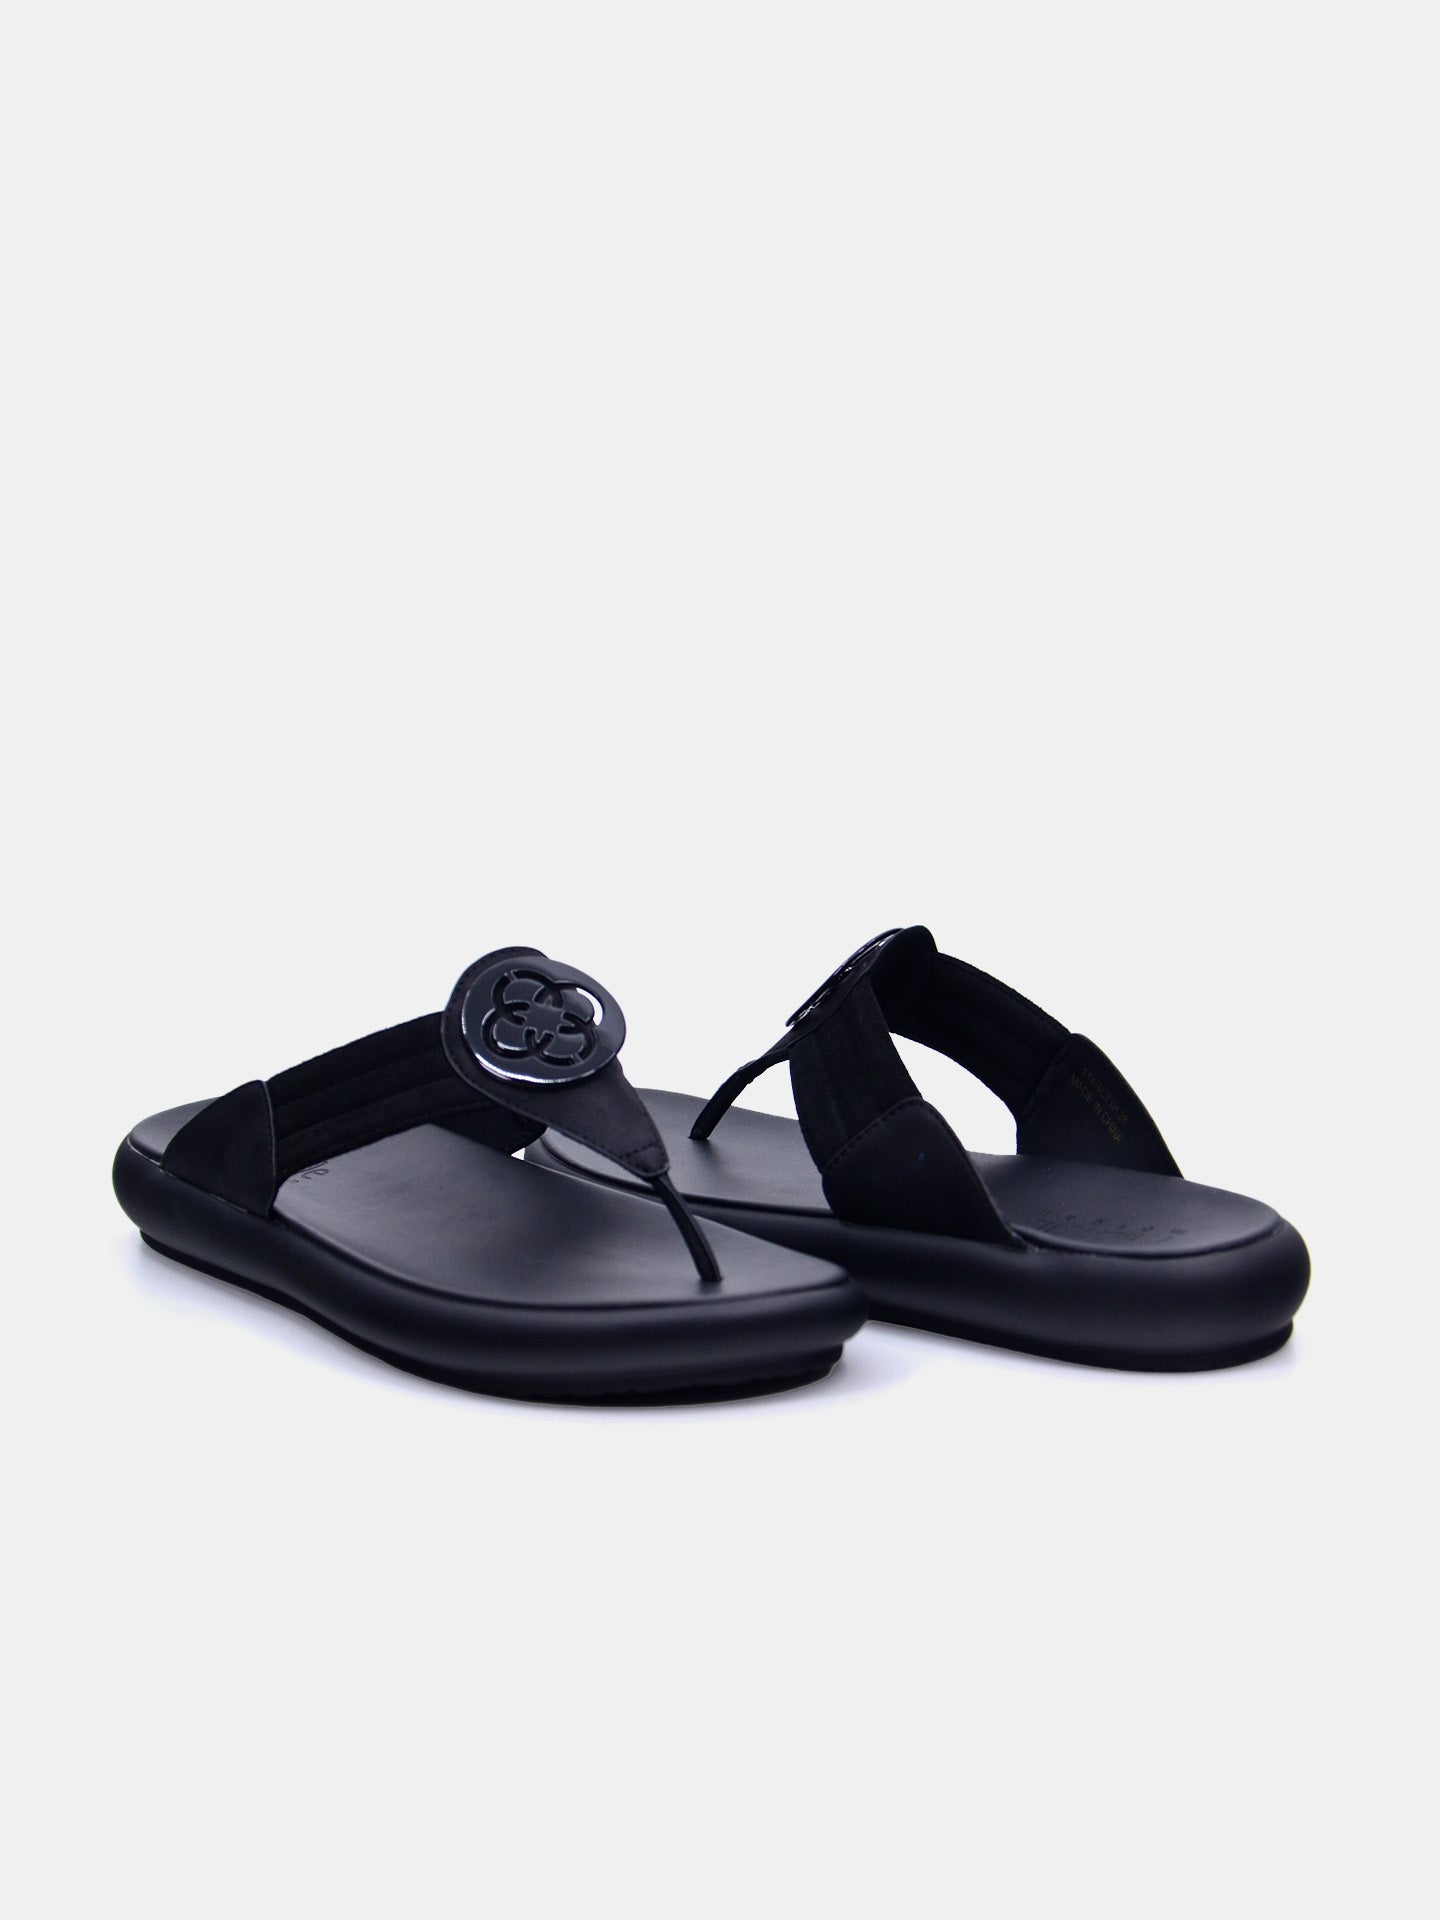 Michelle Morgan 114RC71H Women's Flat Sandals #color_Black